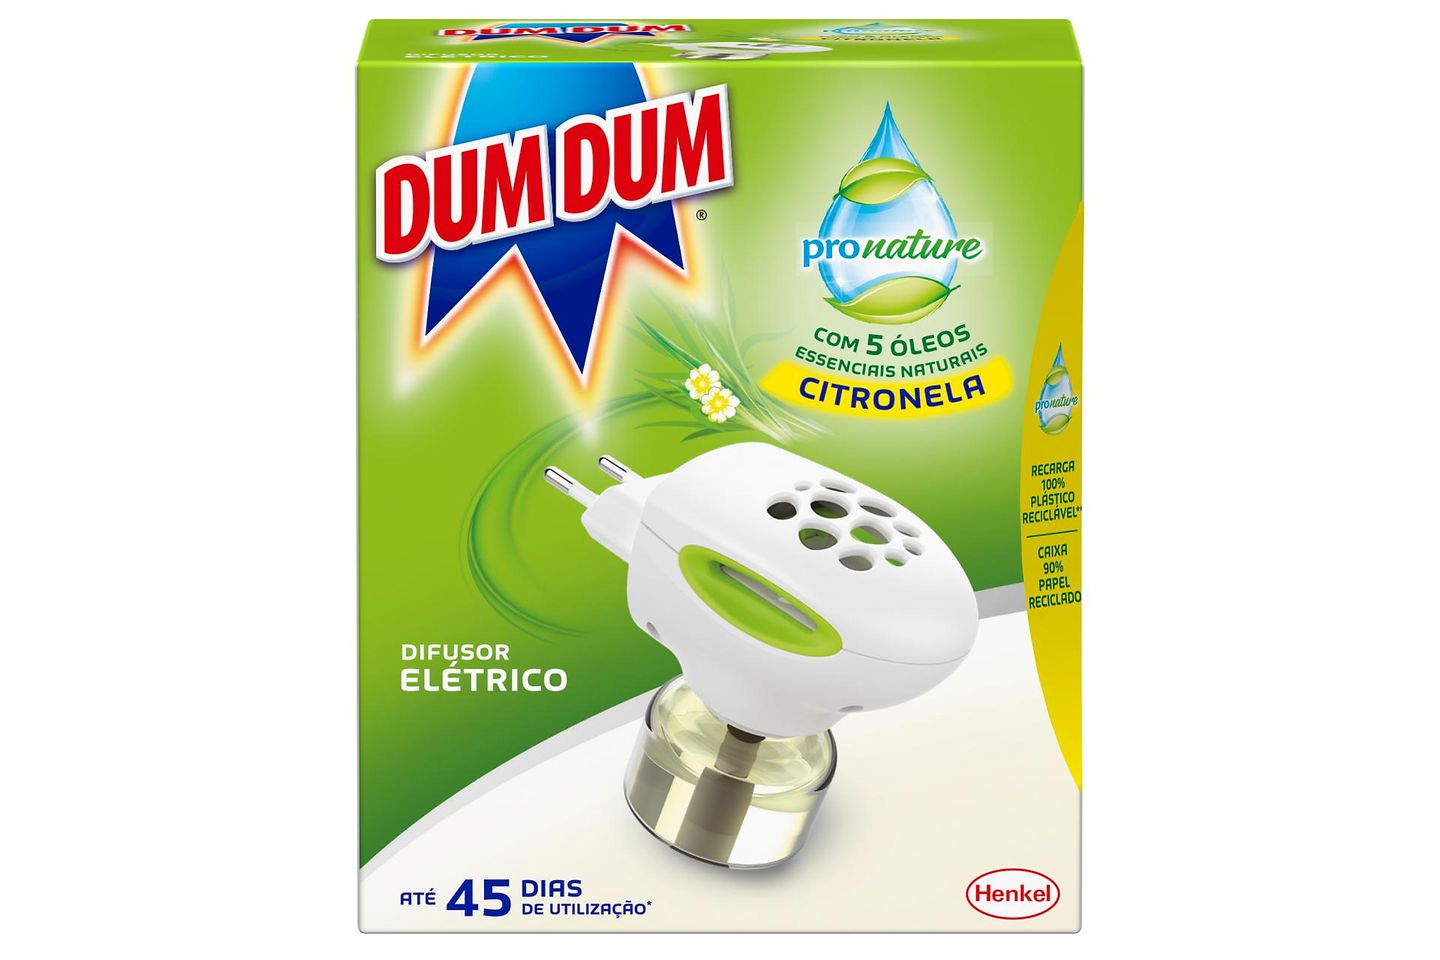 Dum Dum ProNature apresentam nova fórmula sustentável além de embalagens eco-friendly